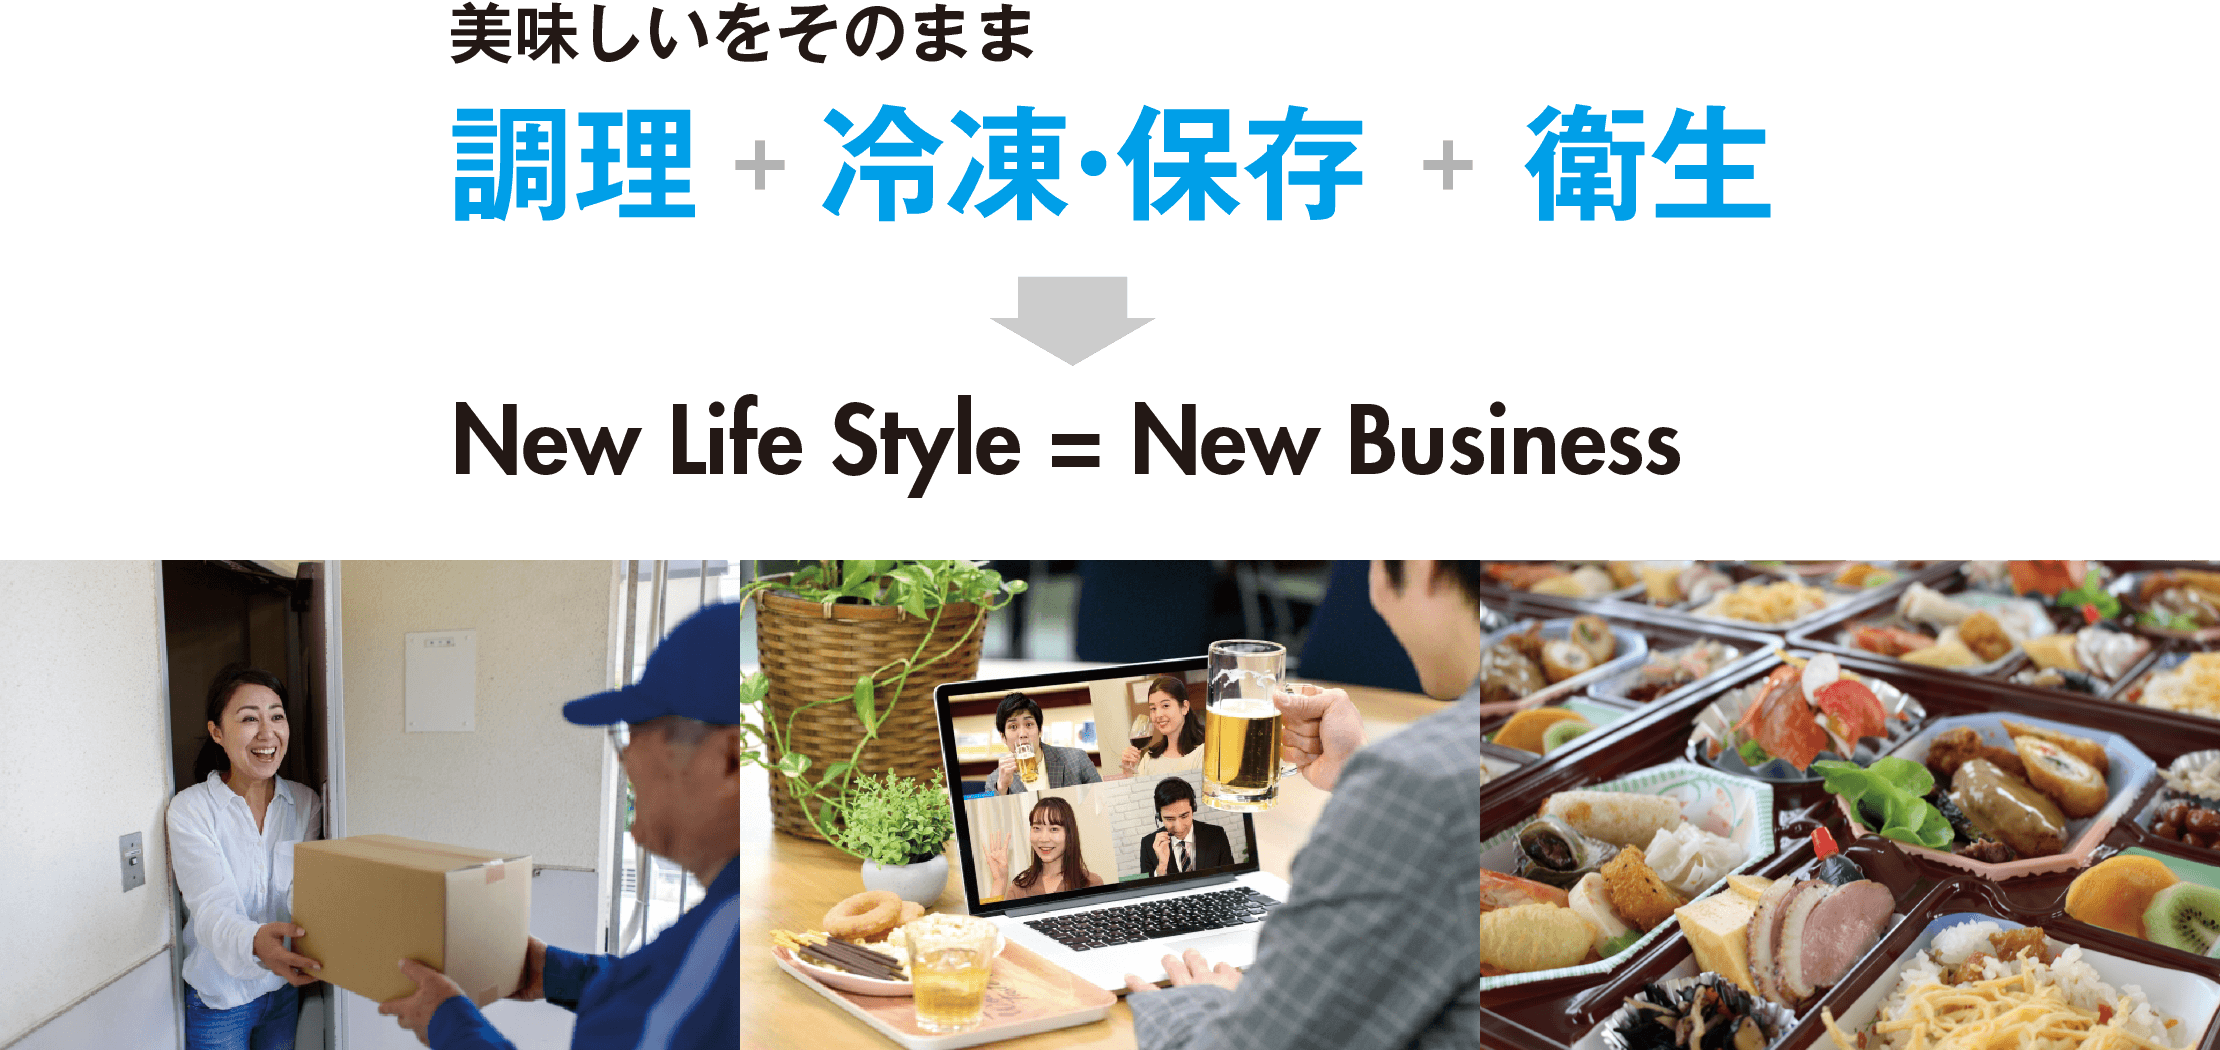 美味しいをそのまま「調理＋冷凍・保存 ＋ 衛生」New Life Style = New Business